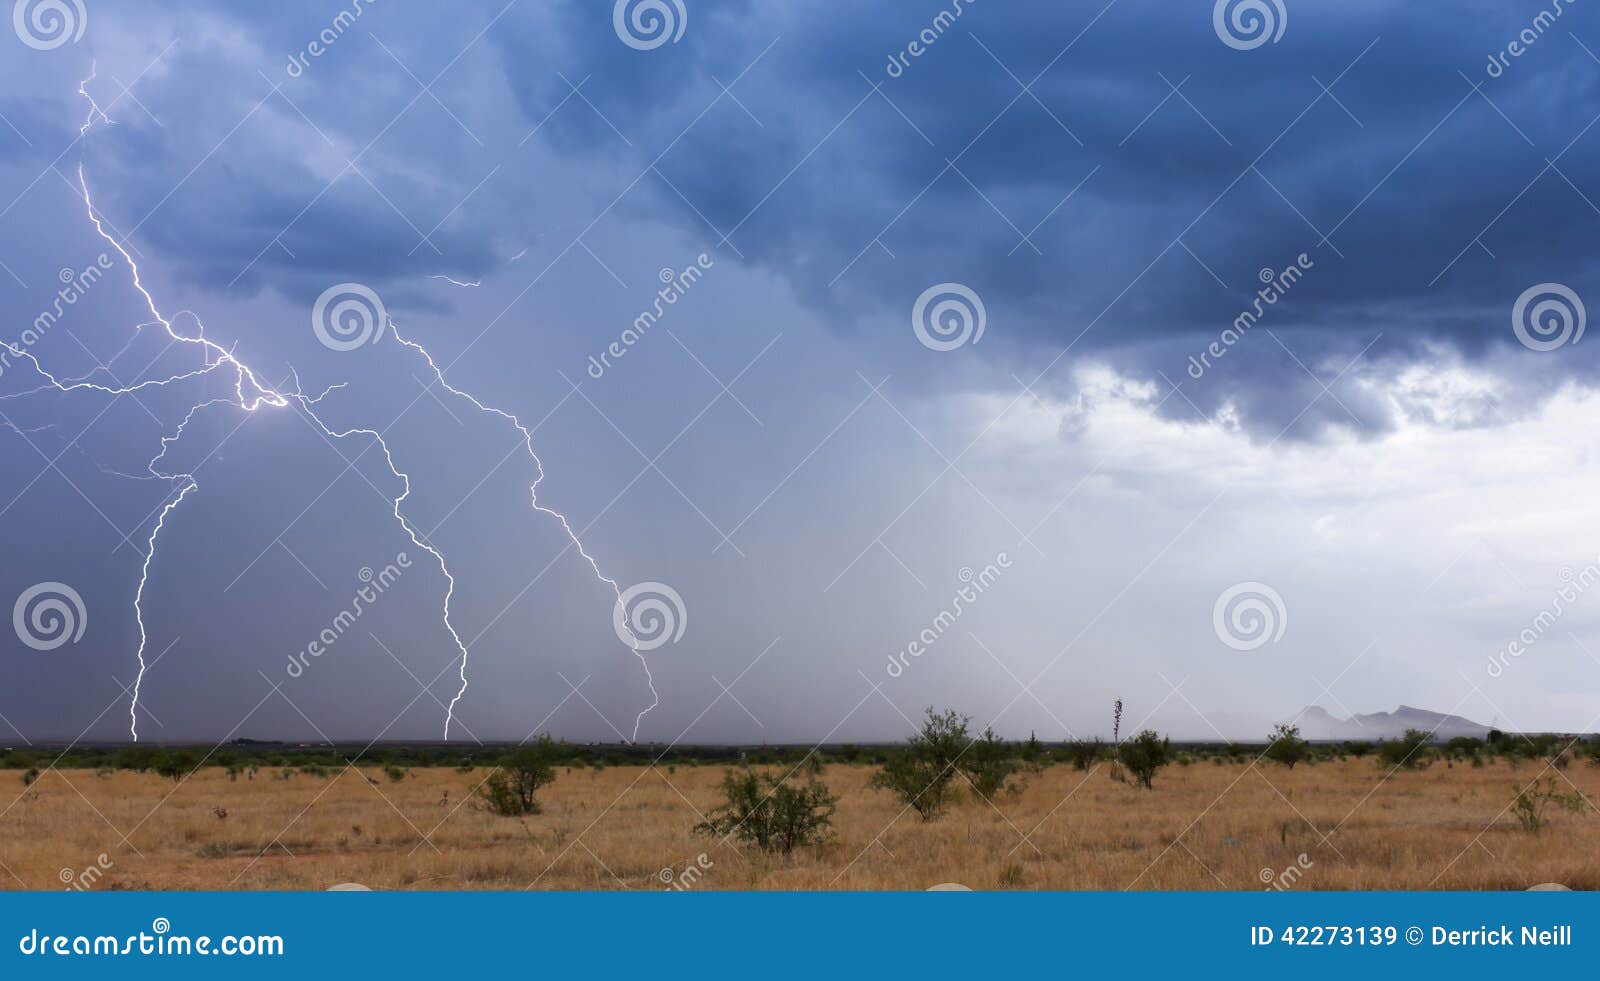 a monsoon storm moves across the desert